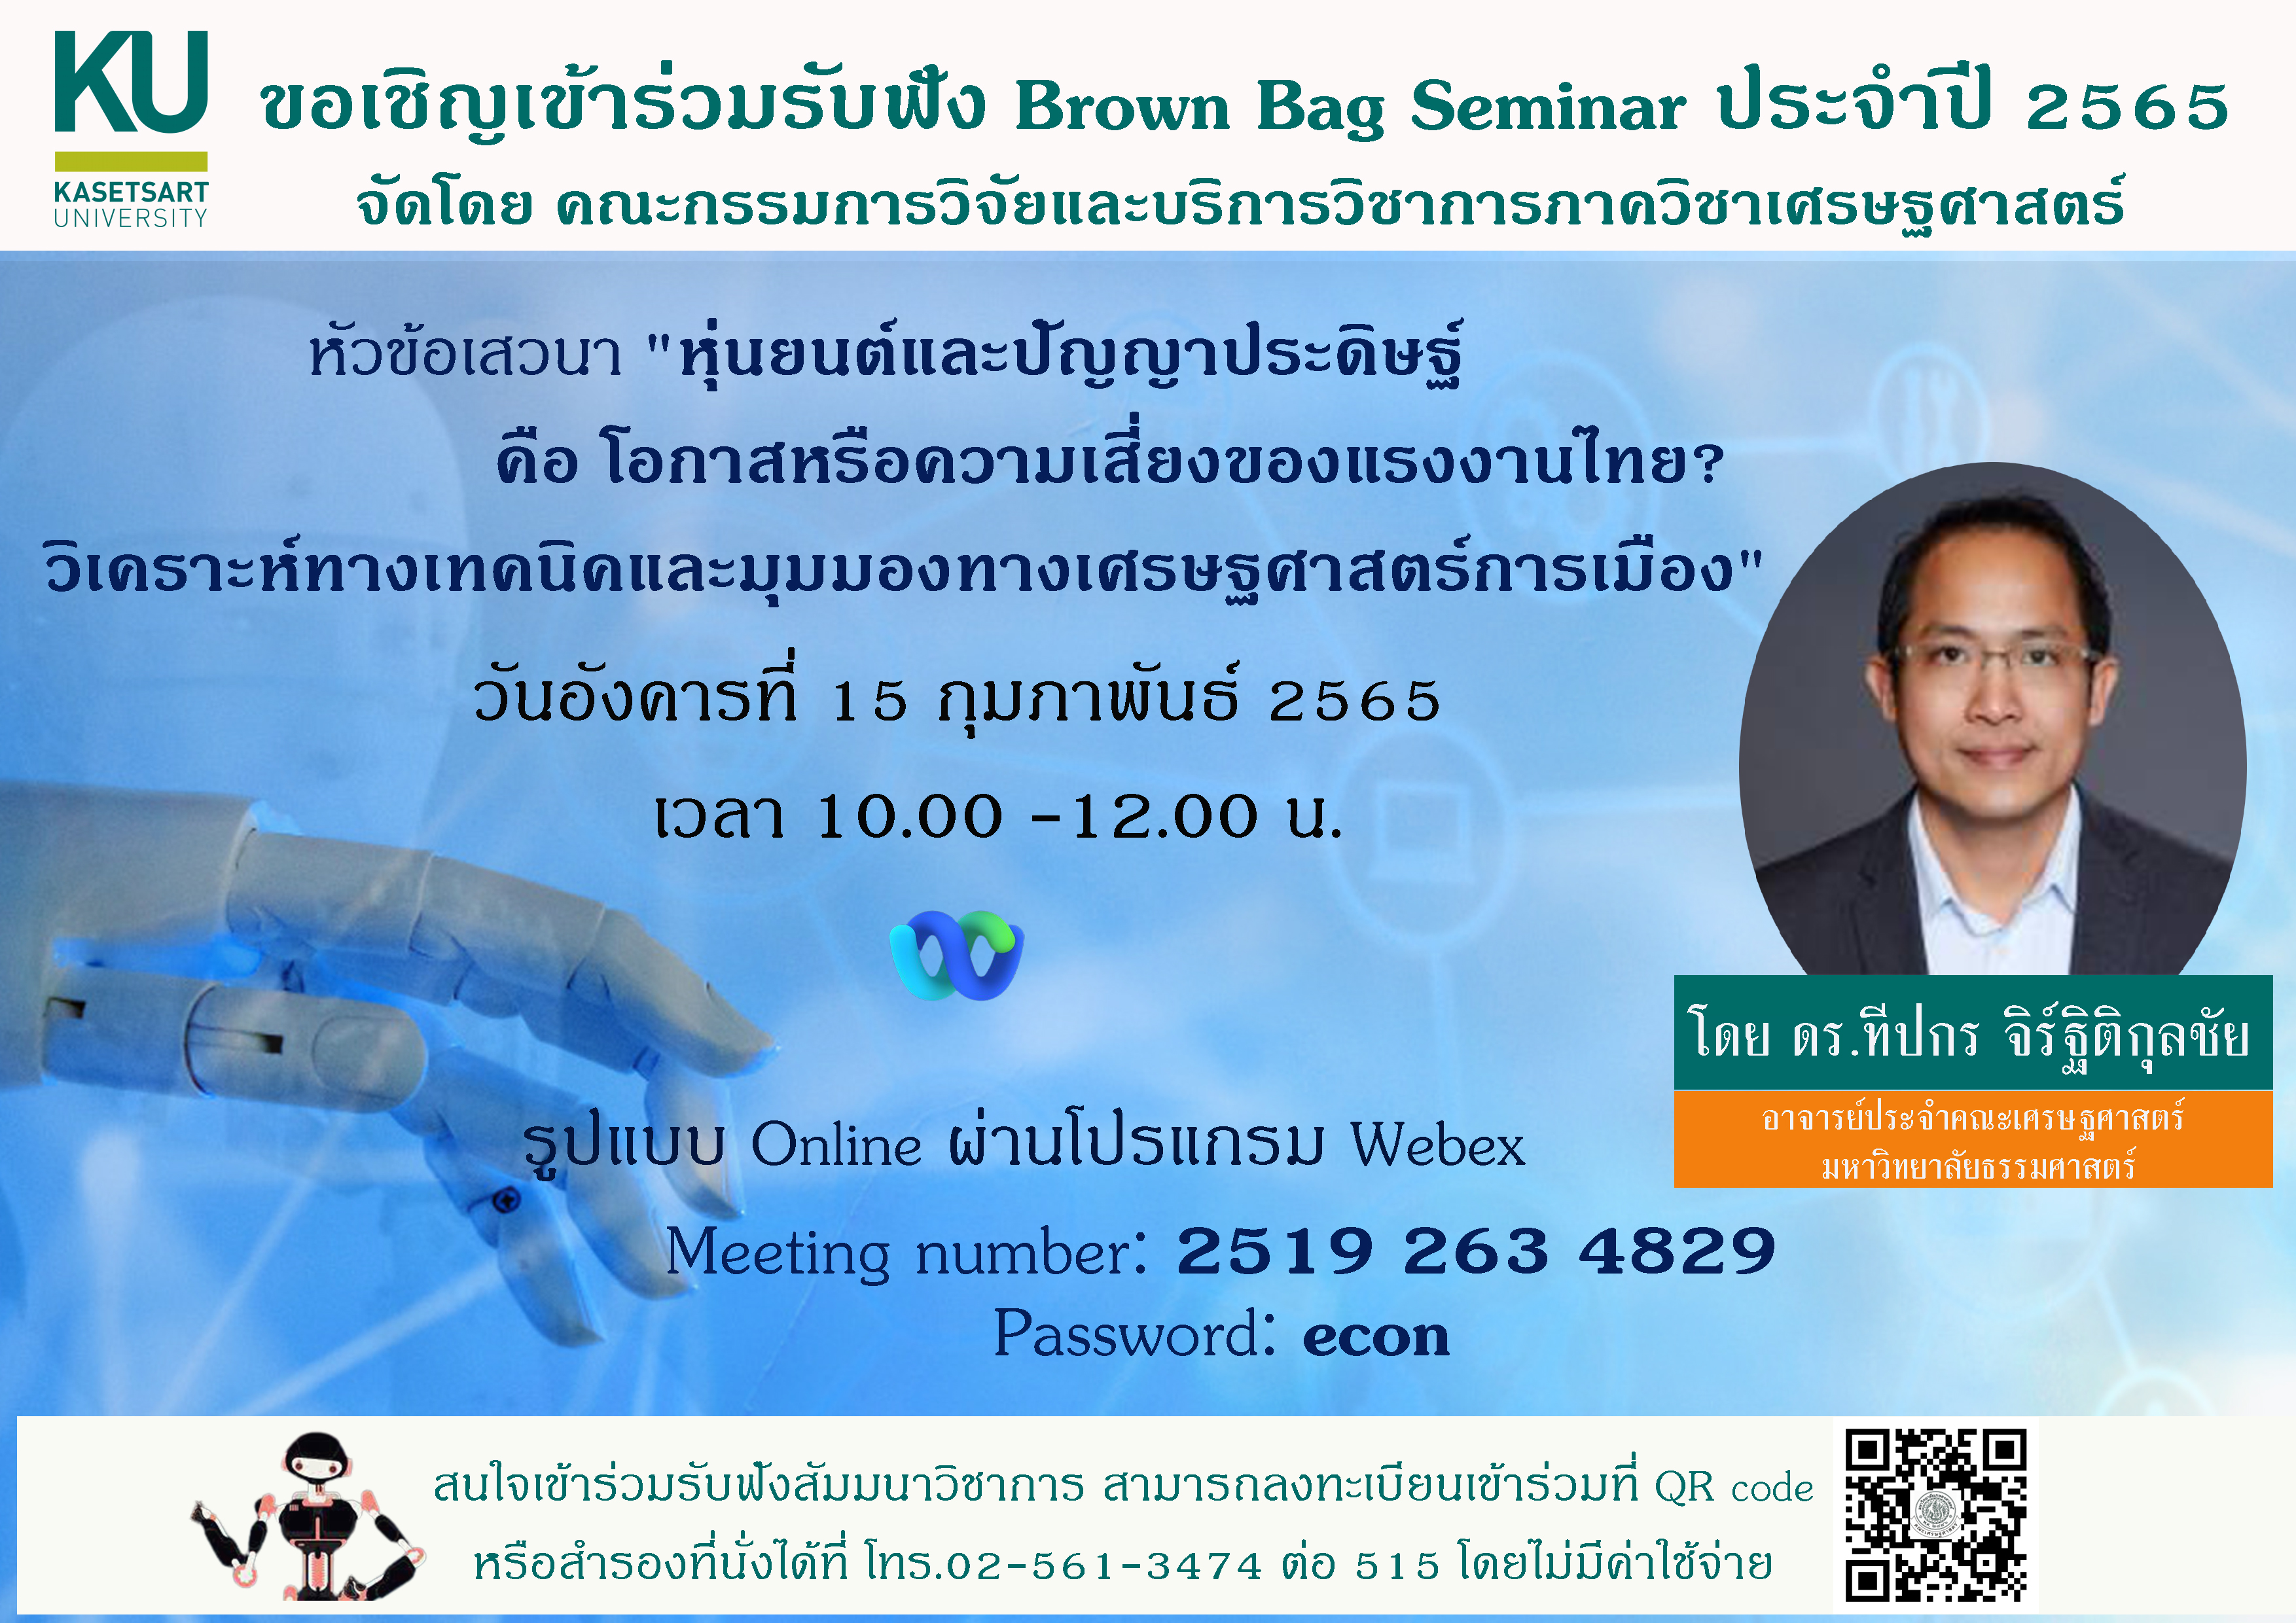 ขอเชิญเข้าร่วมรับฟังสัมมนาวิชาการ Brown Bag Seminar ครั้งที่ 2 ประจำปี 2565